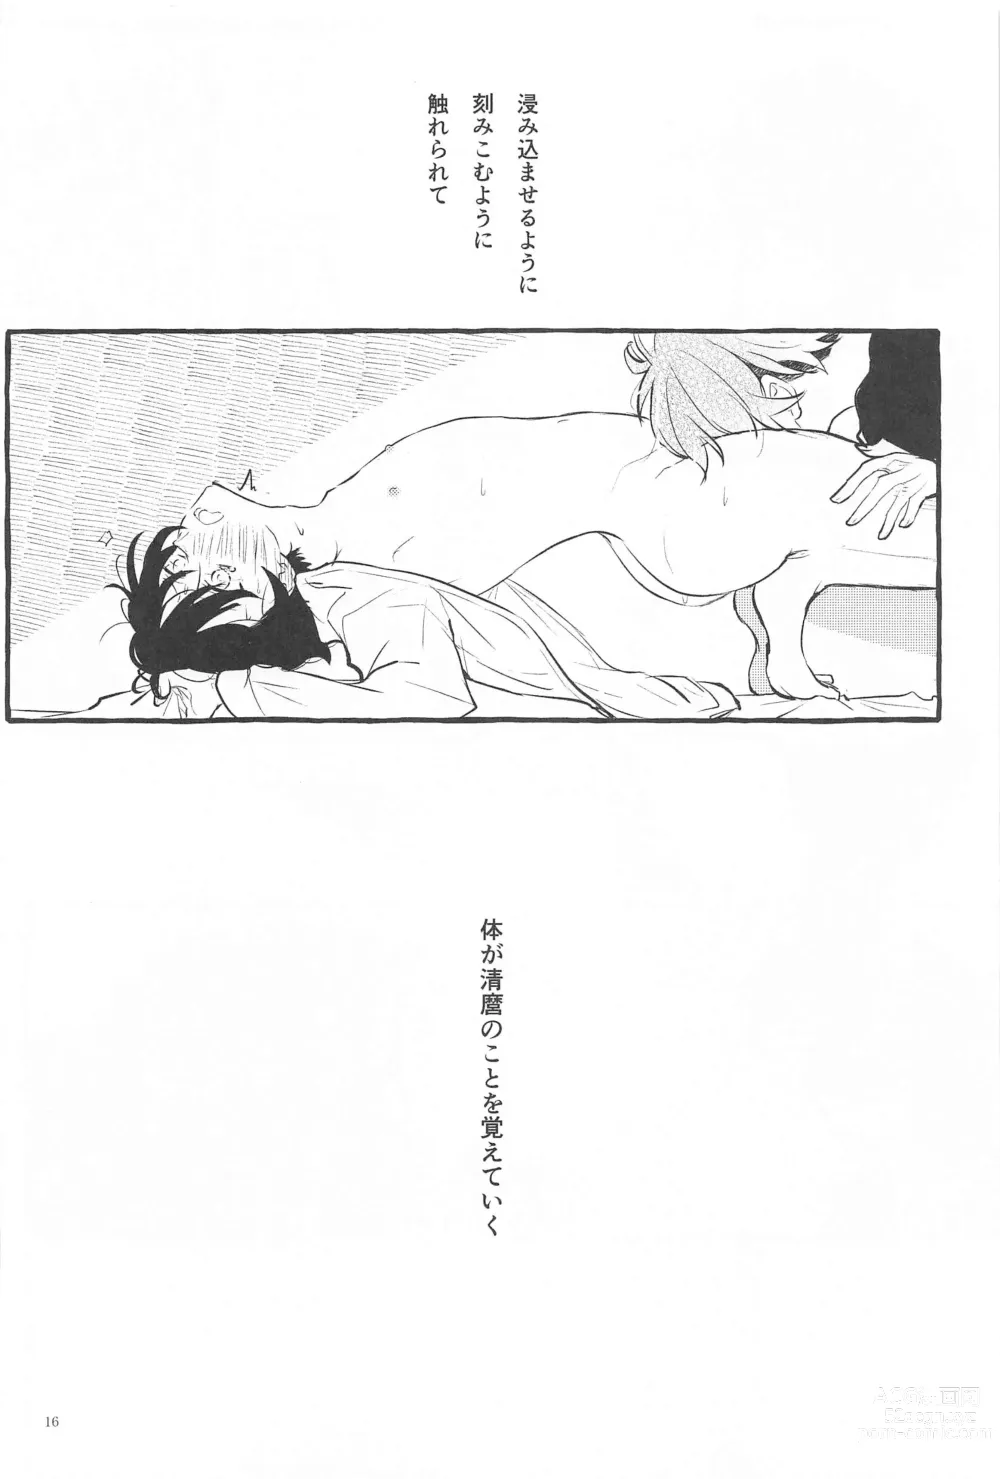 Page 15 of doujinshi Kanete kara no Setsubou de